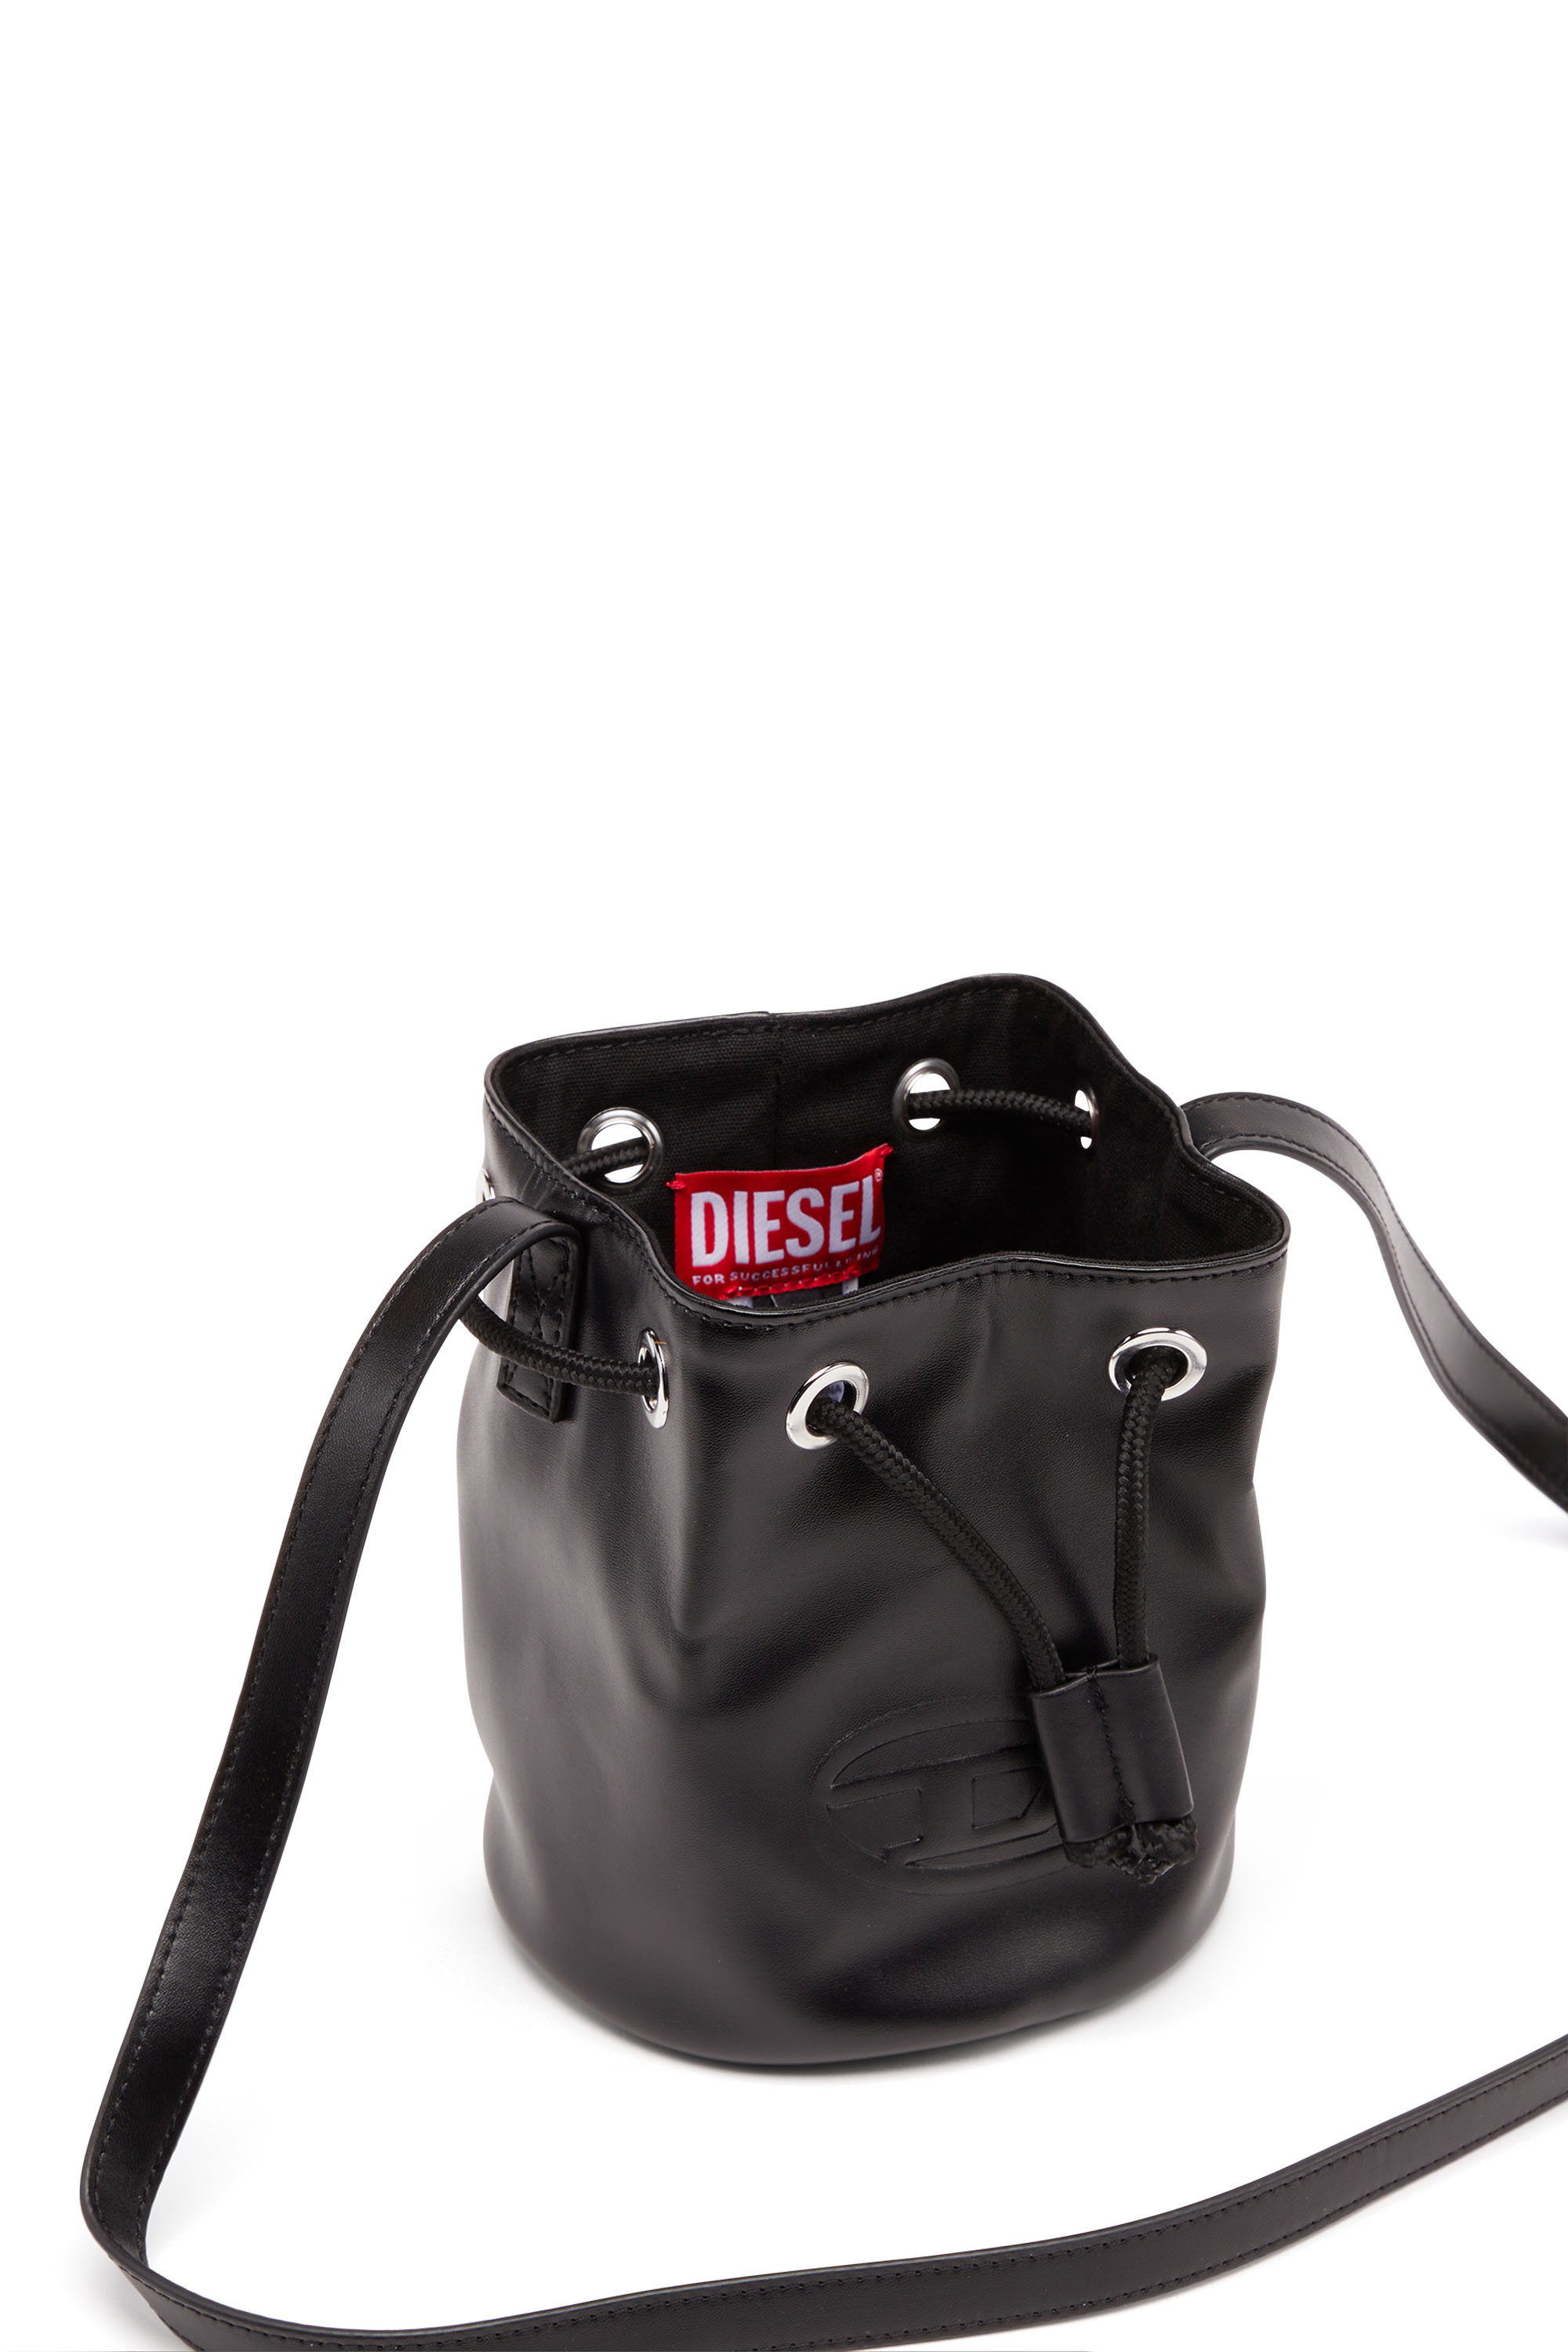 Diesel - WELLTY, Nero - Image 5